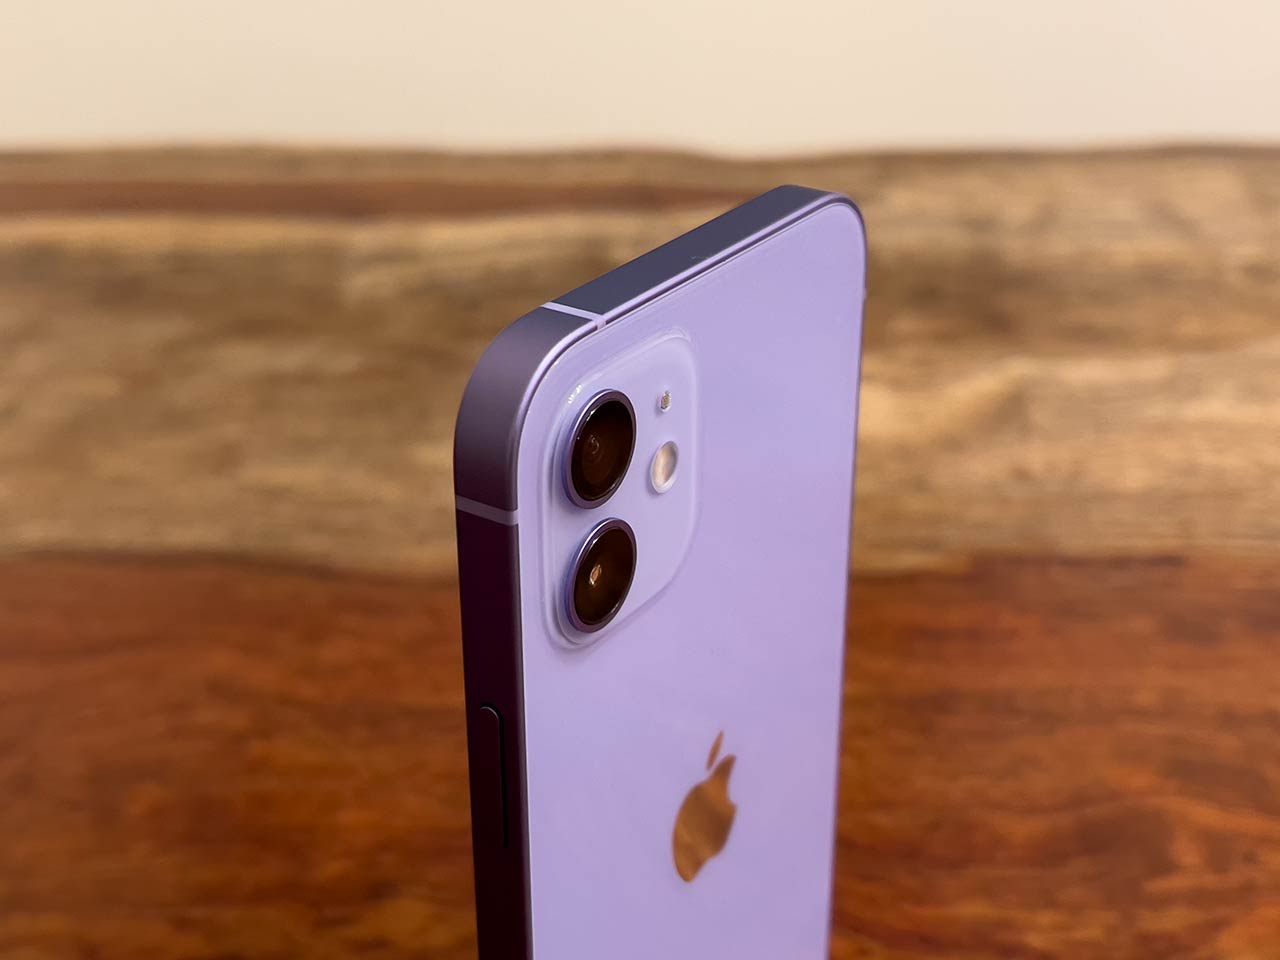 爽やかな紫に心奪われる iPhone 12の新色パープル 実機動画 - Engadget 日本版